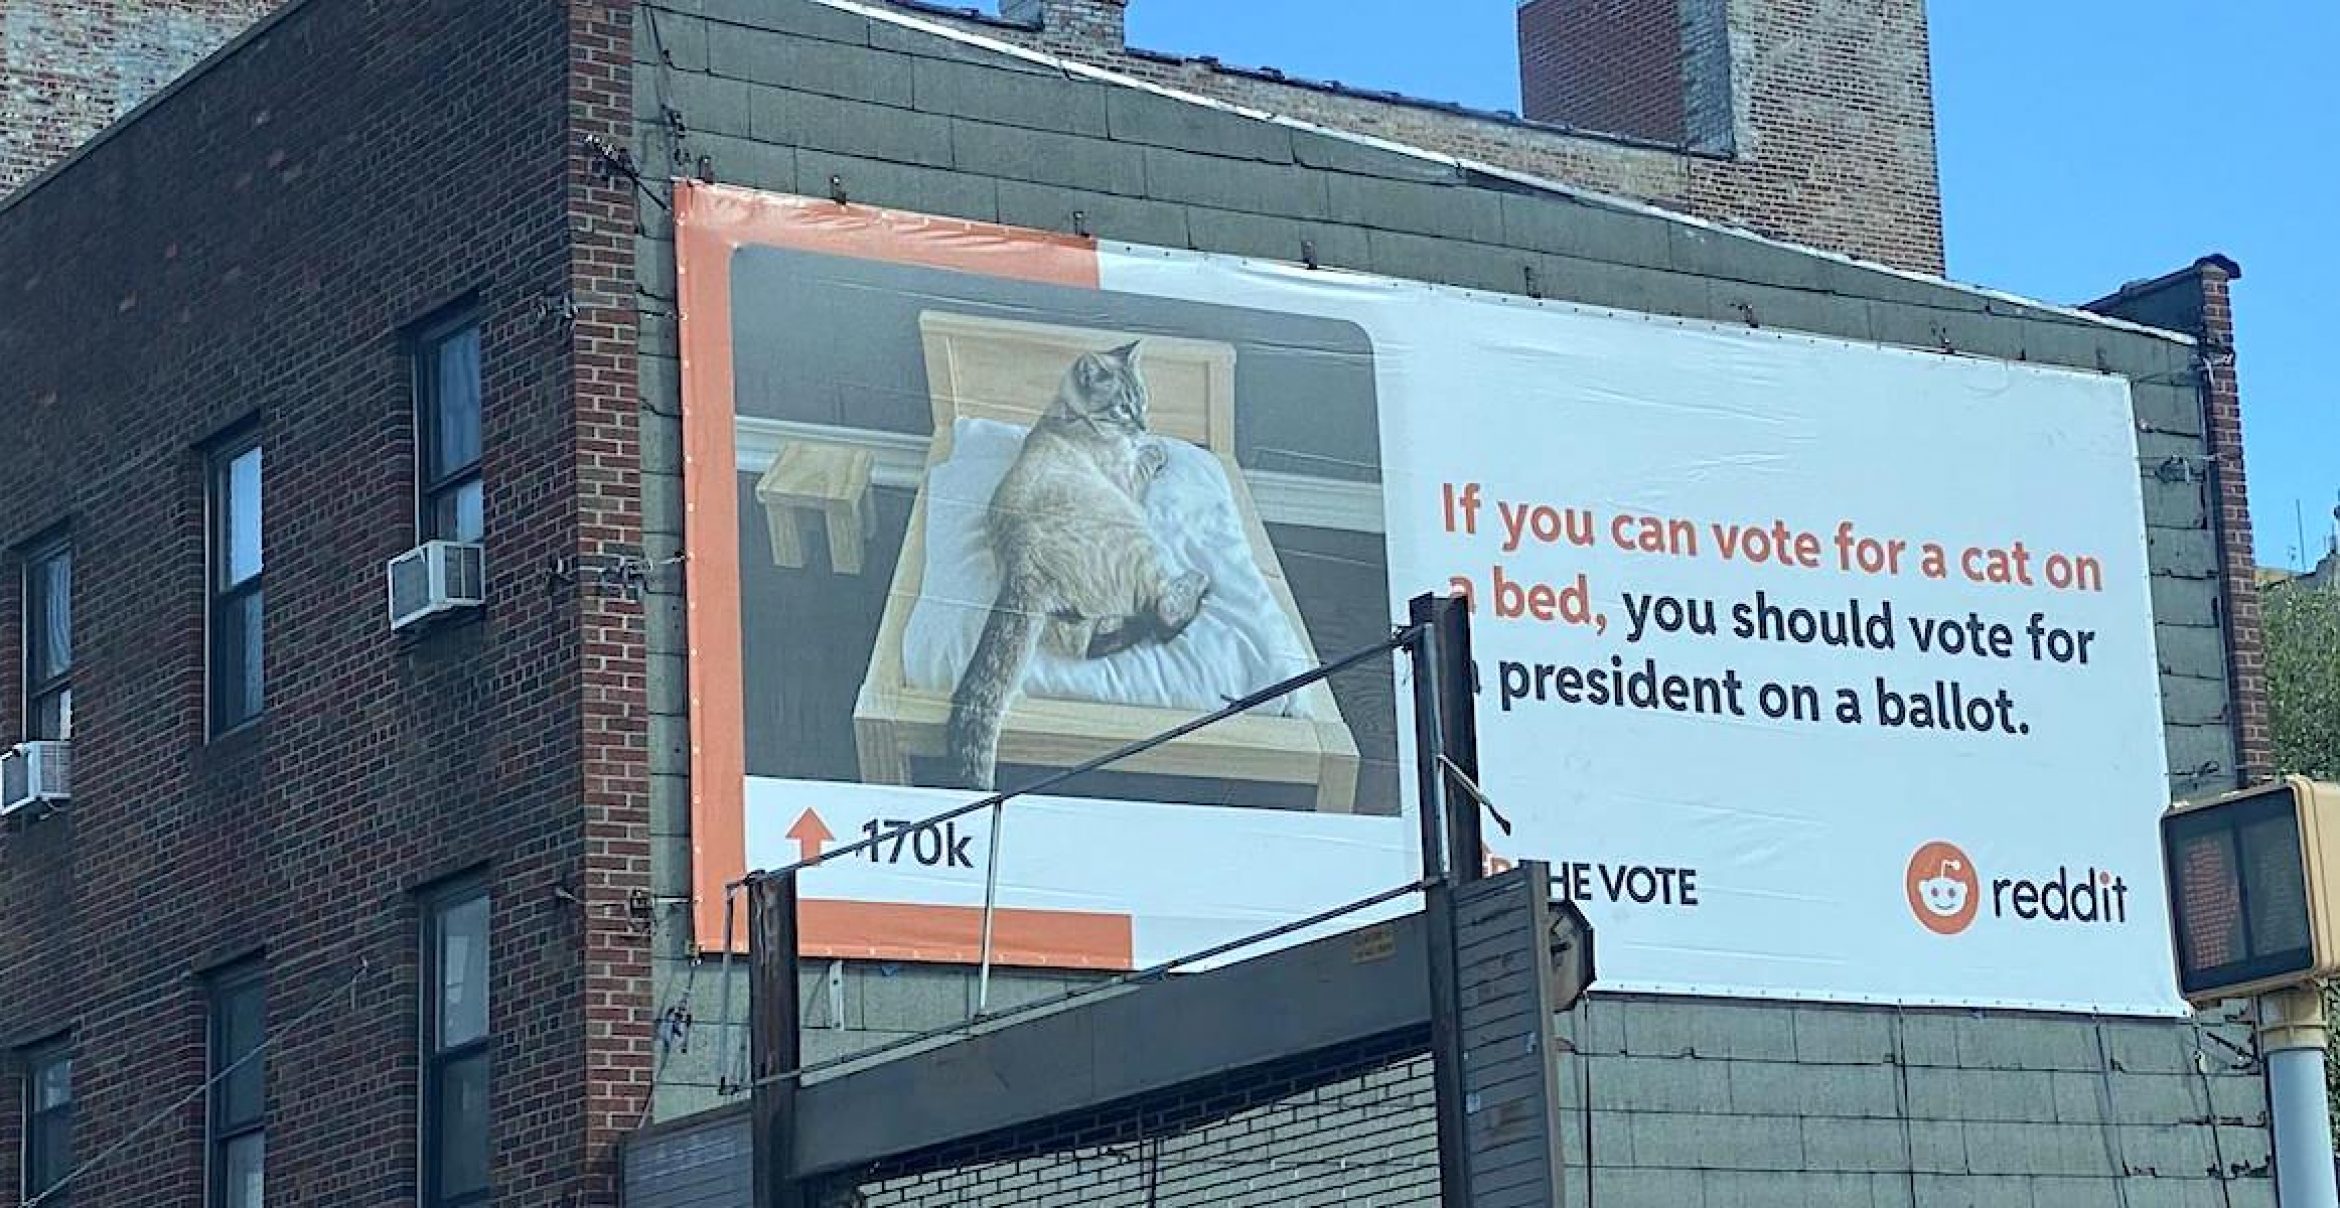 Reddit startet witzige Plakat-Kampagne, um Leute zum Wählen zu animieren